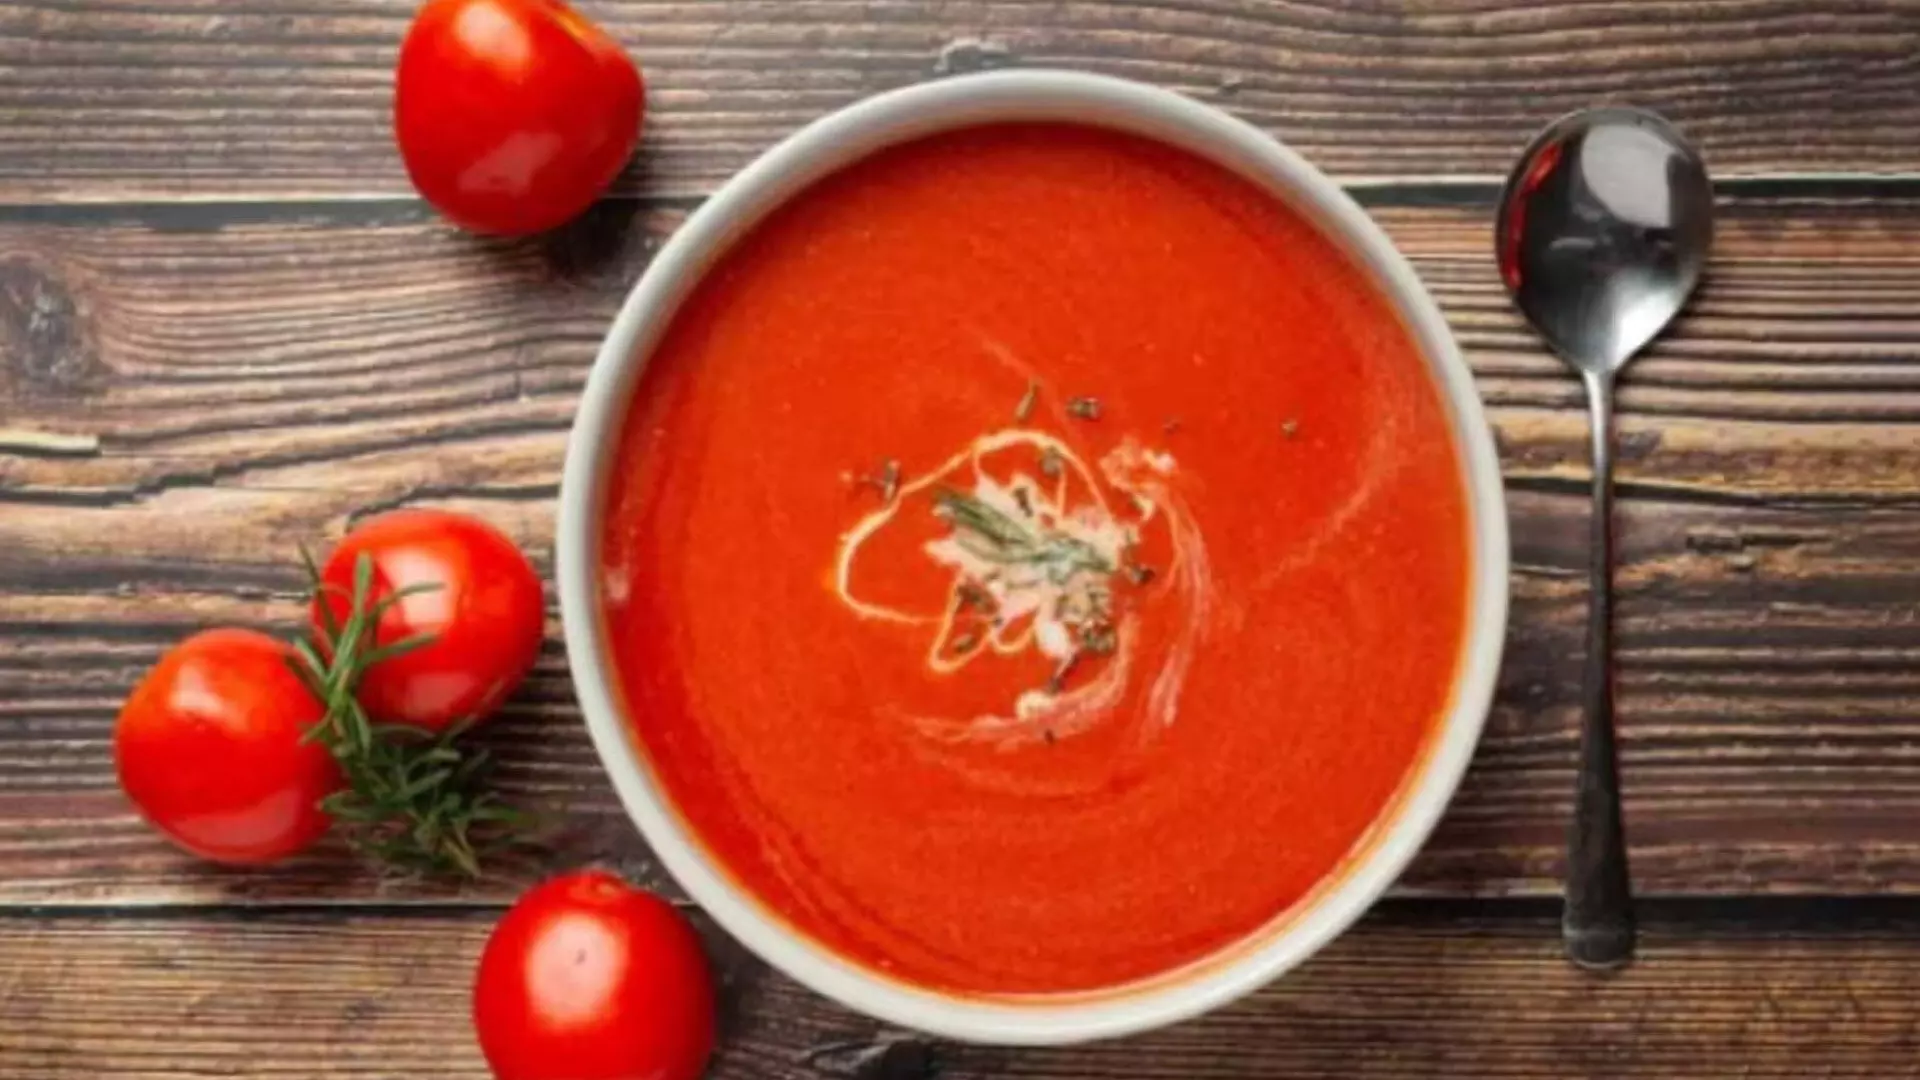 tomato soup:टमाटर का सूप घर में भी तैयार कर सकते हैं स्वाद का मजा